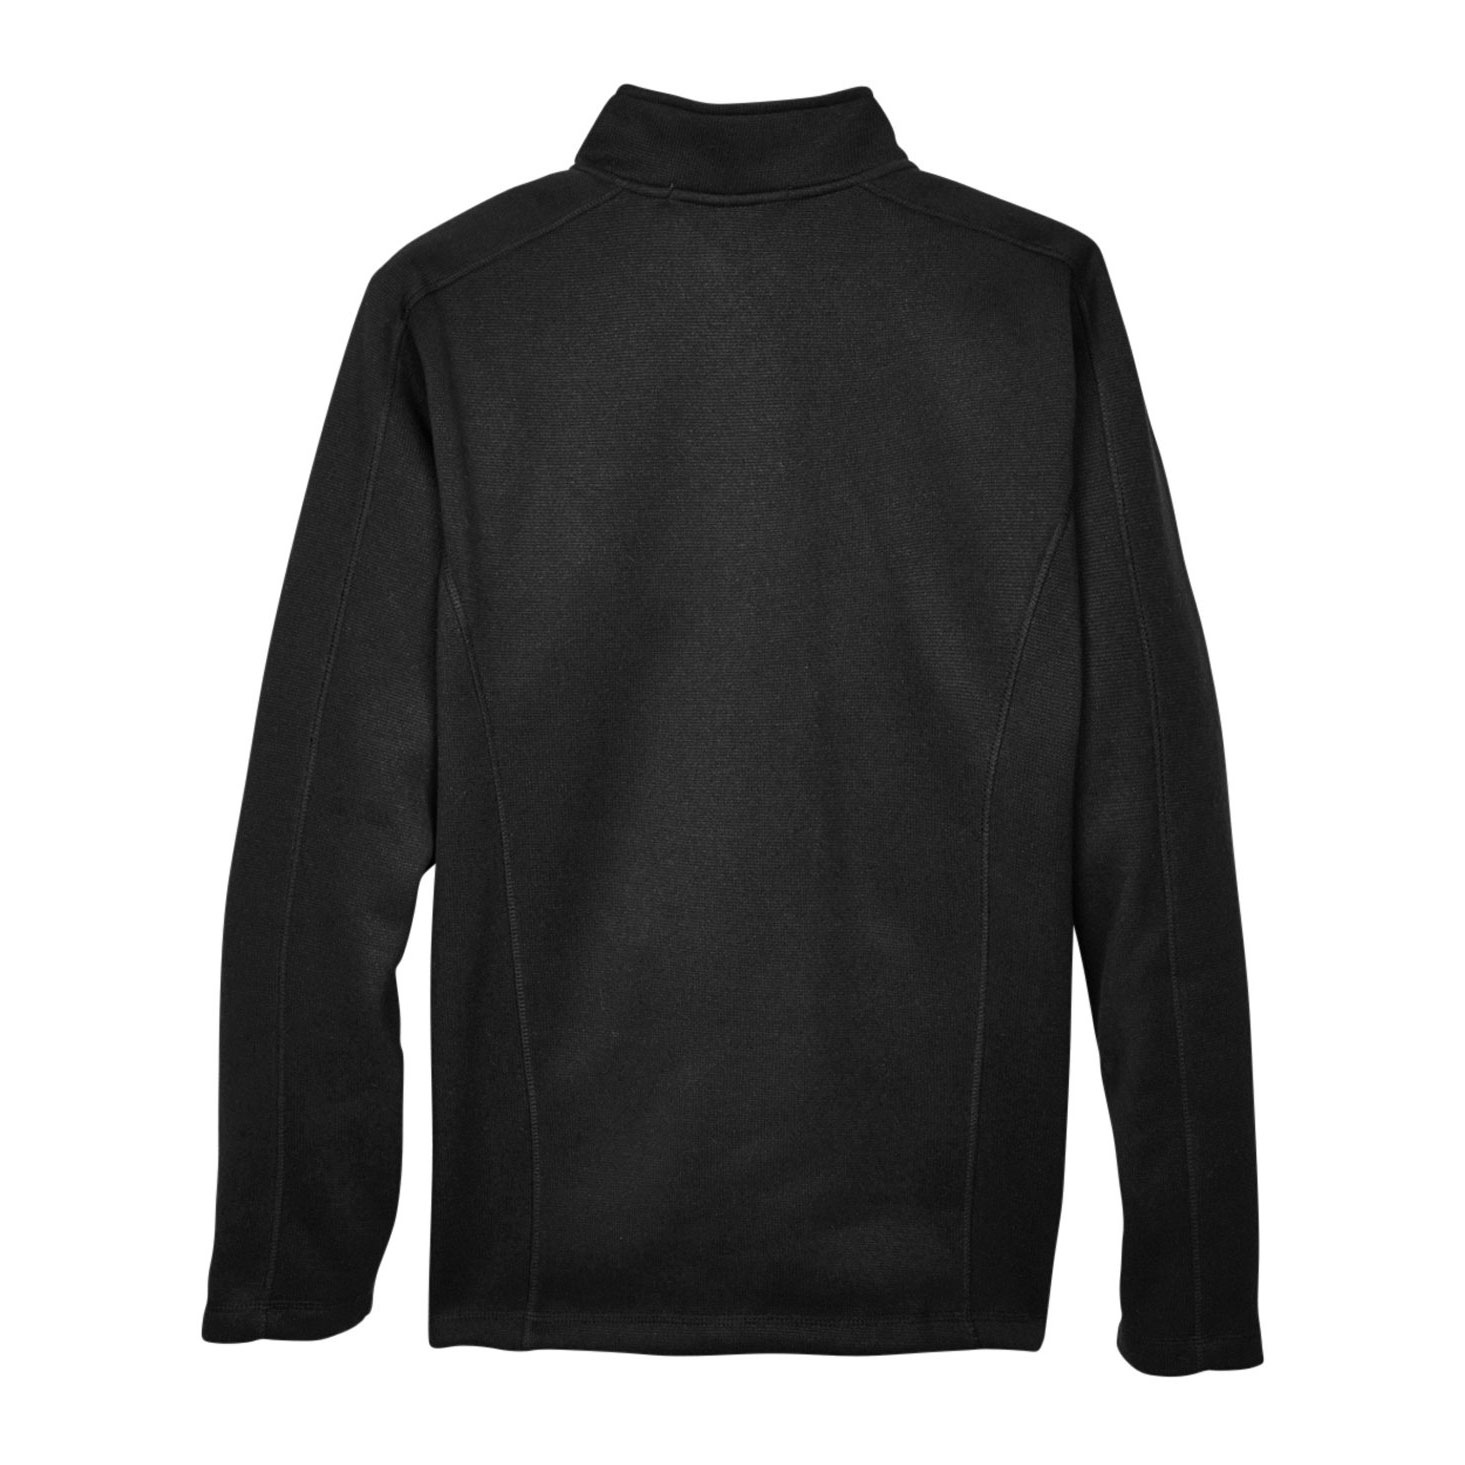 Devon & Jones DG793 Men's Bristol Full Zip Sweater Fleece Jacket ...